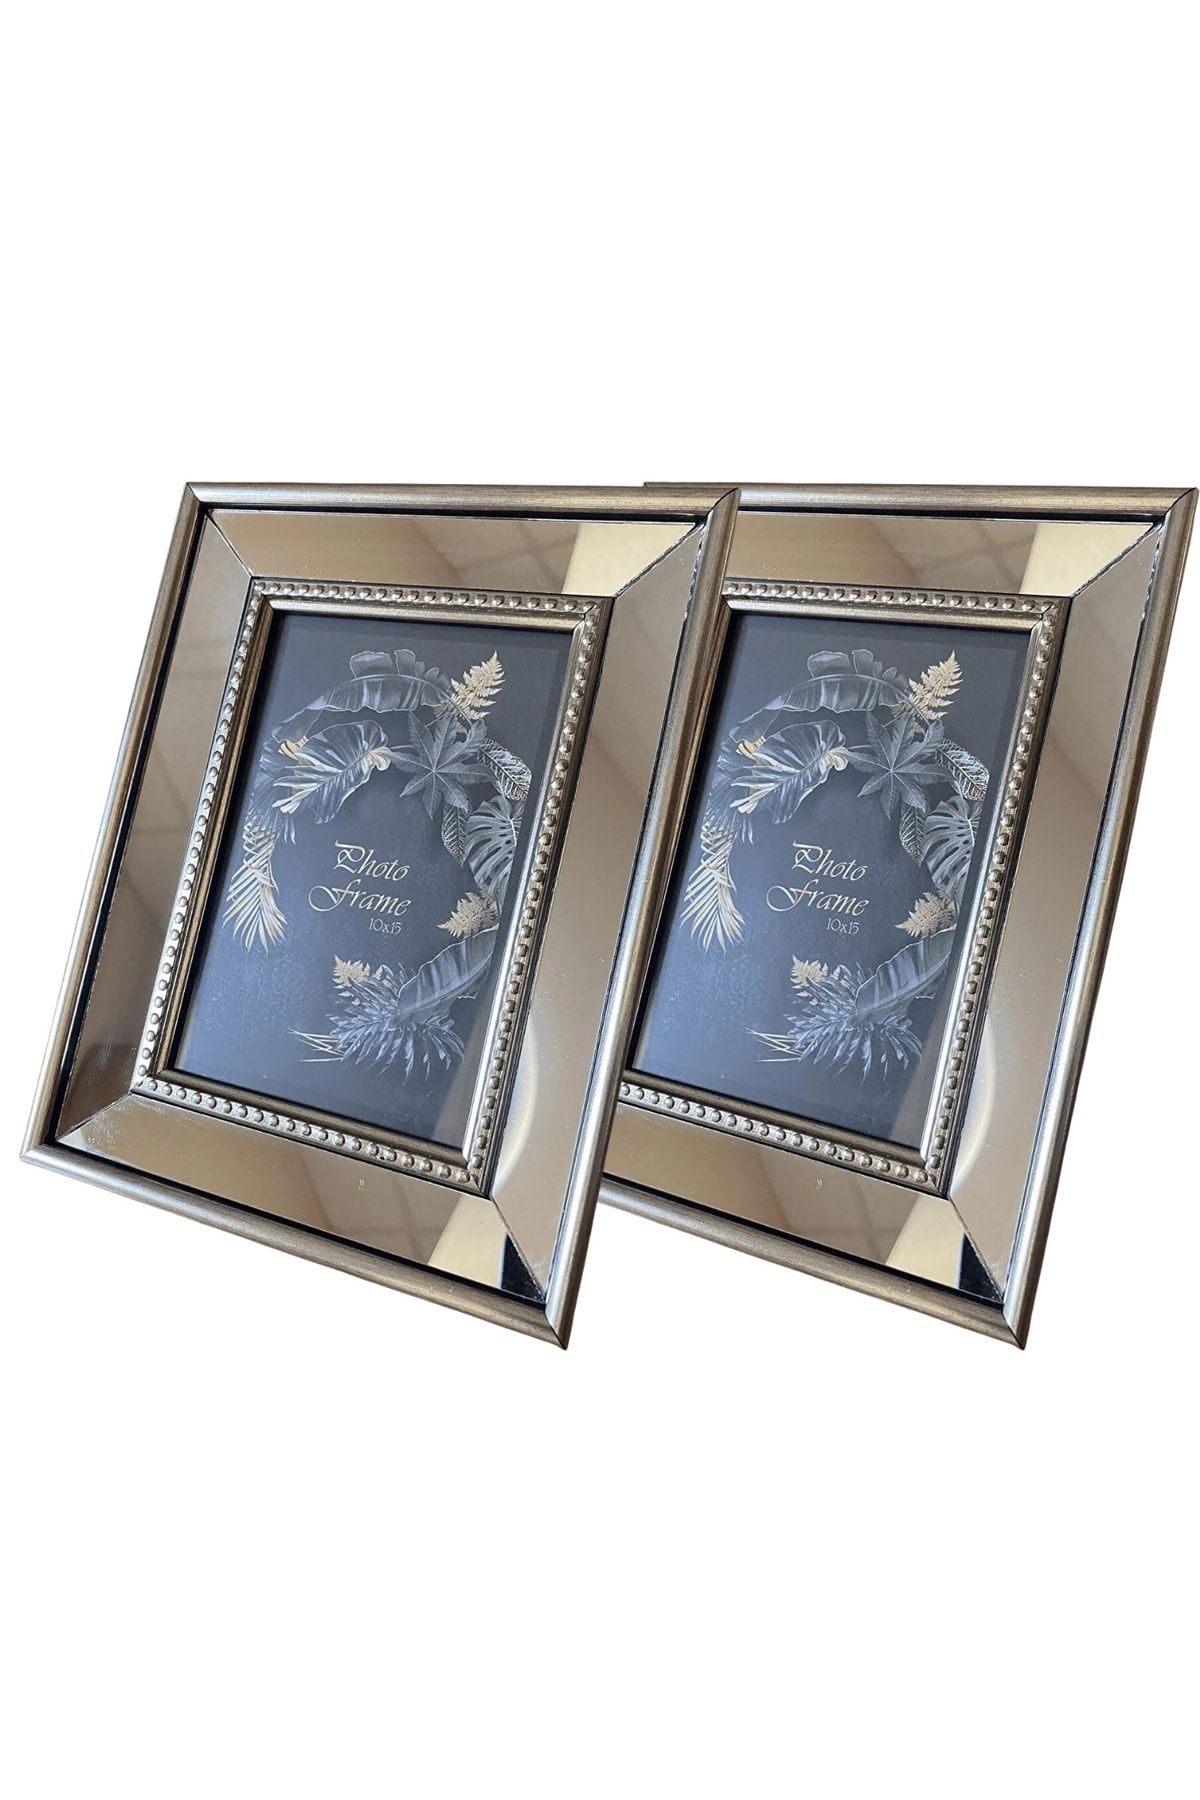 BELLARTE Aynalı Çerçeve, Gümüş Aynalı Fotoğraf Çerçevesi, Cam Çerçeve 10x15cm (2 ADET)